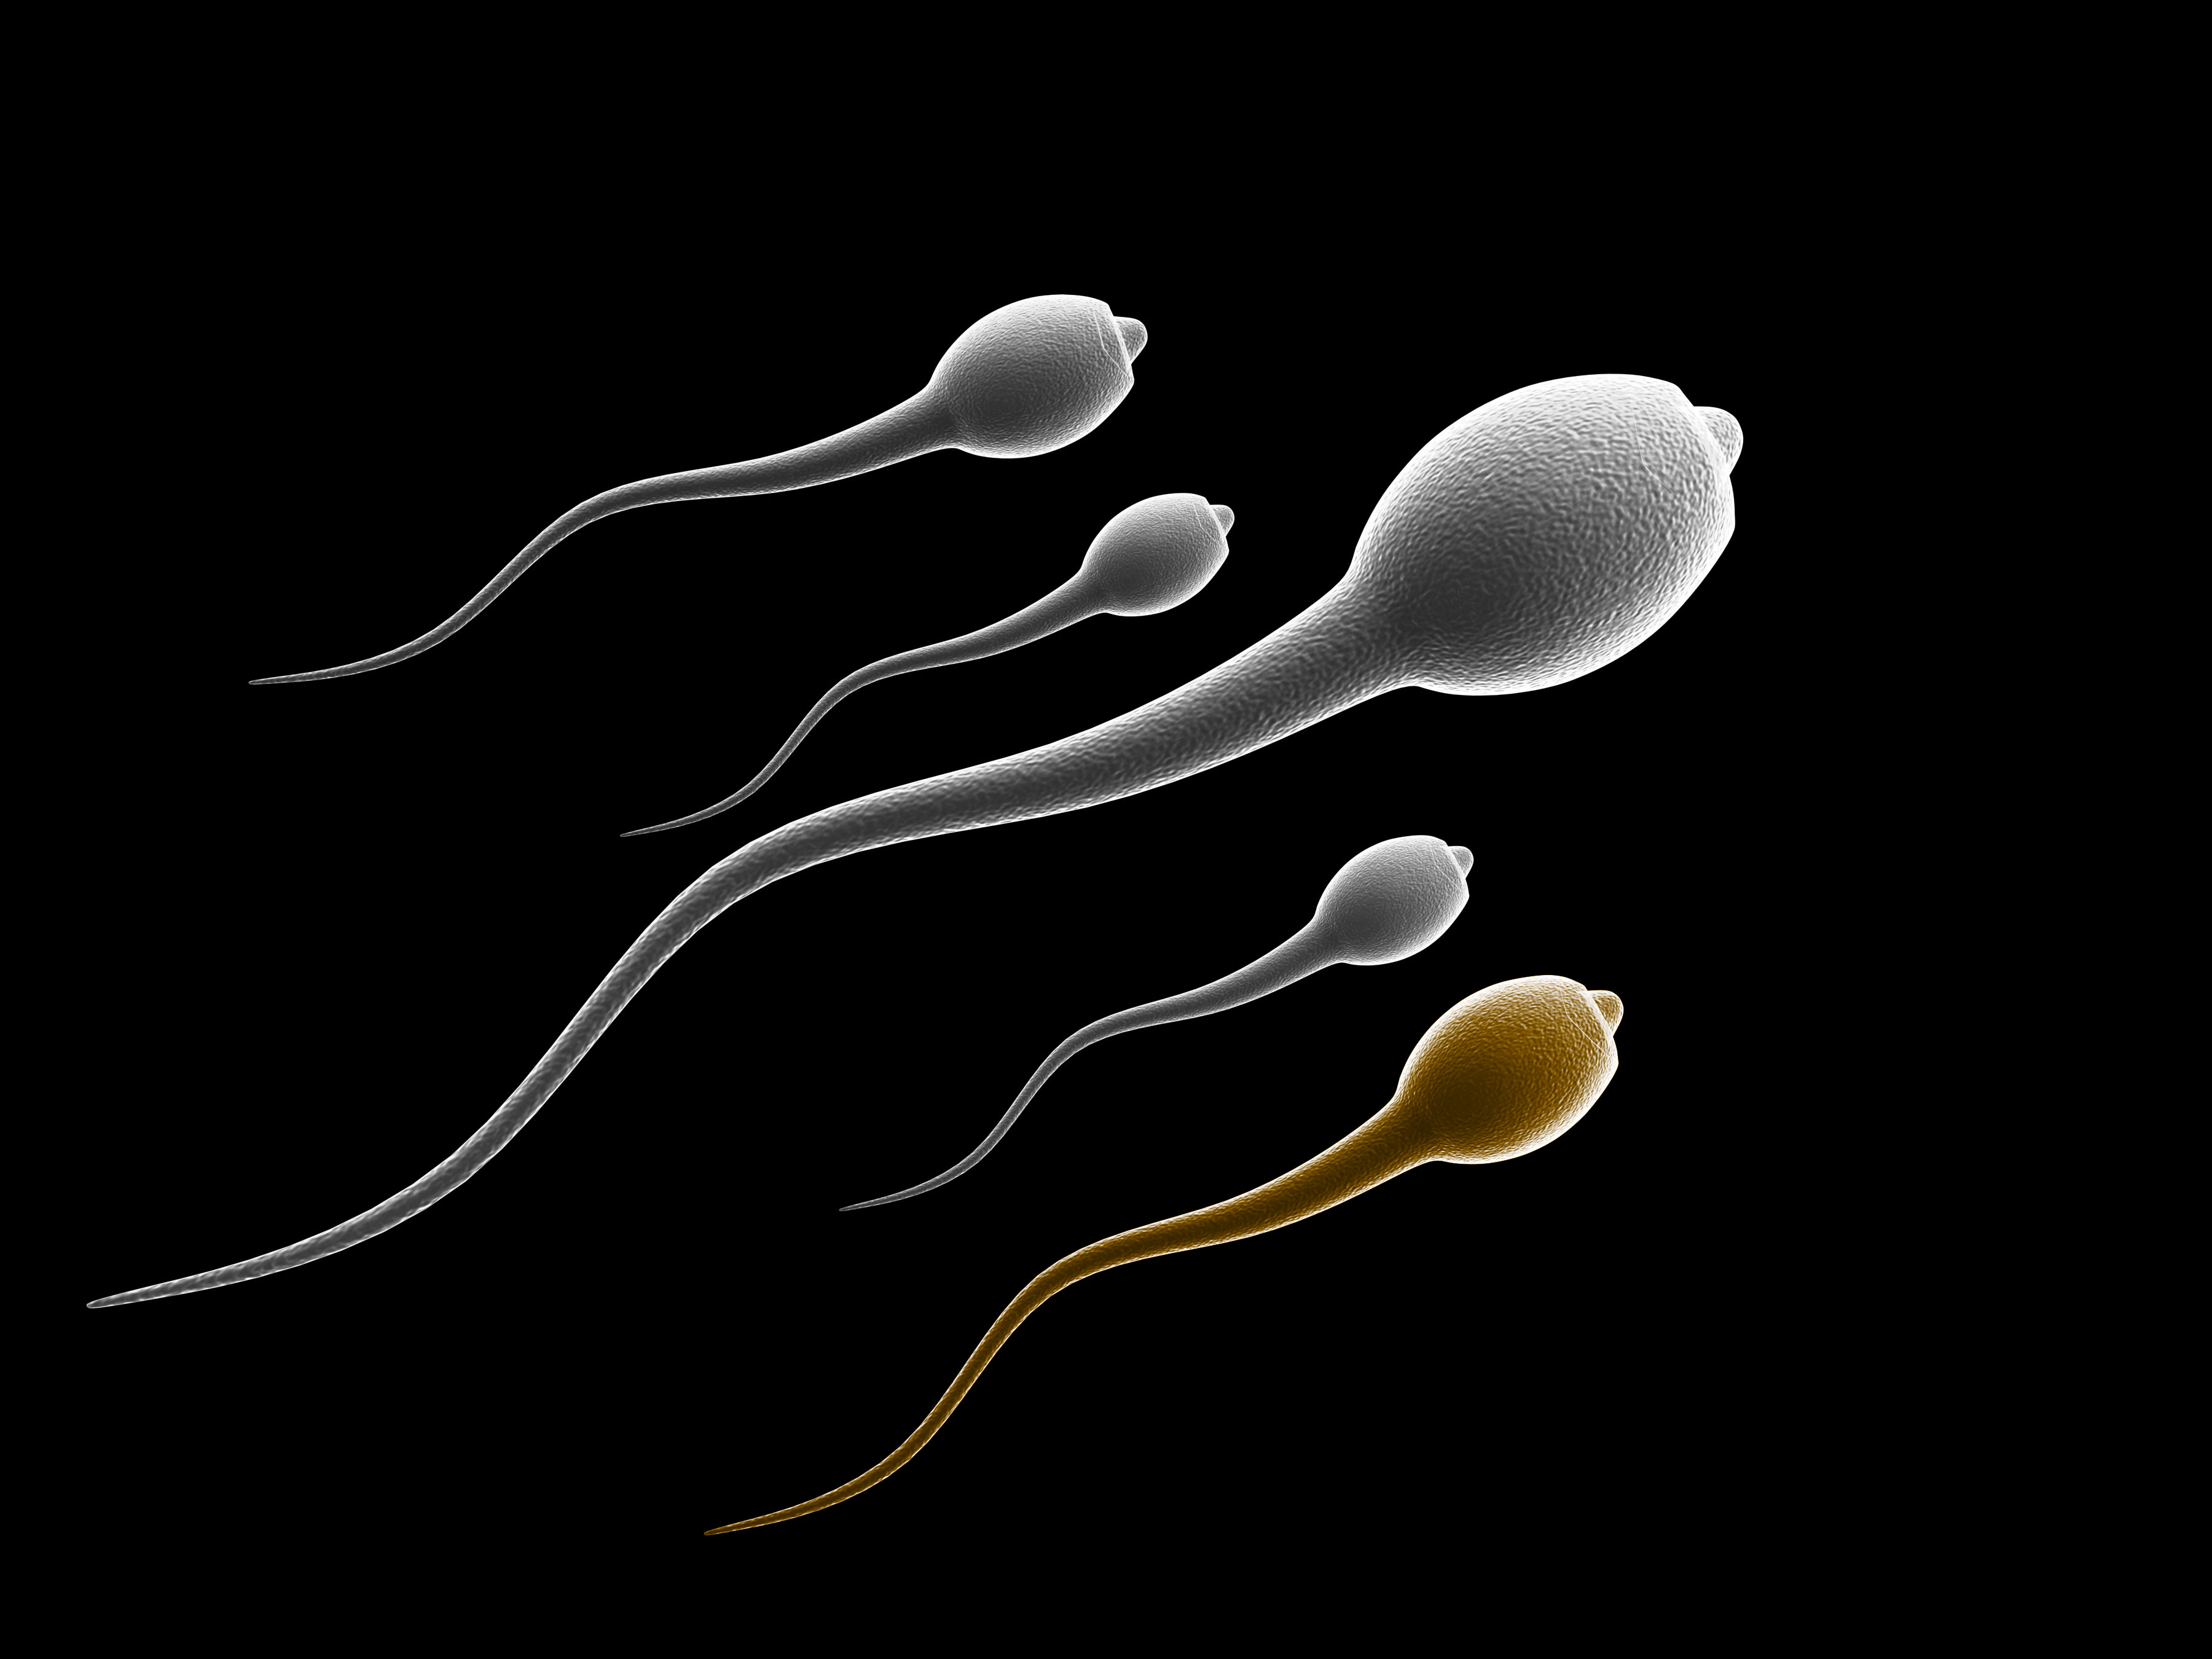 сперма во влагалище юной девочки (120) фото